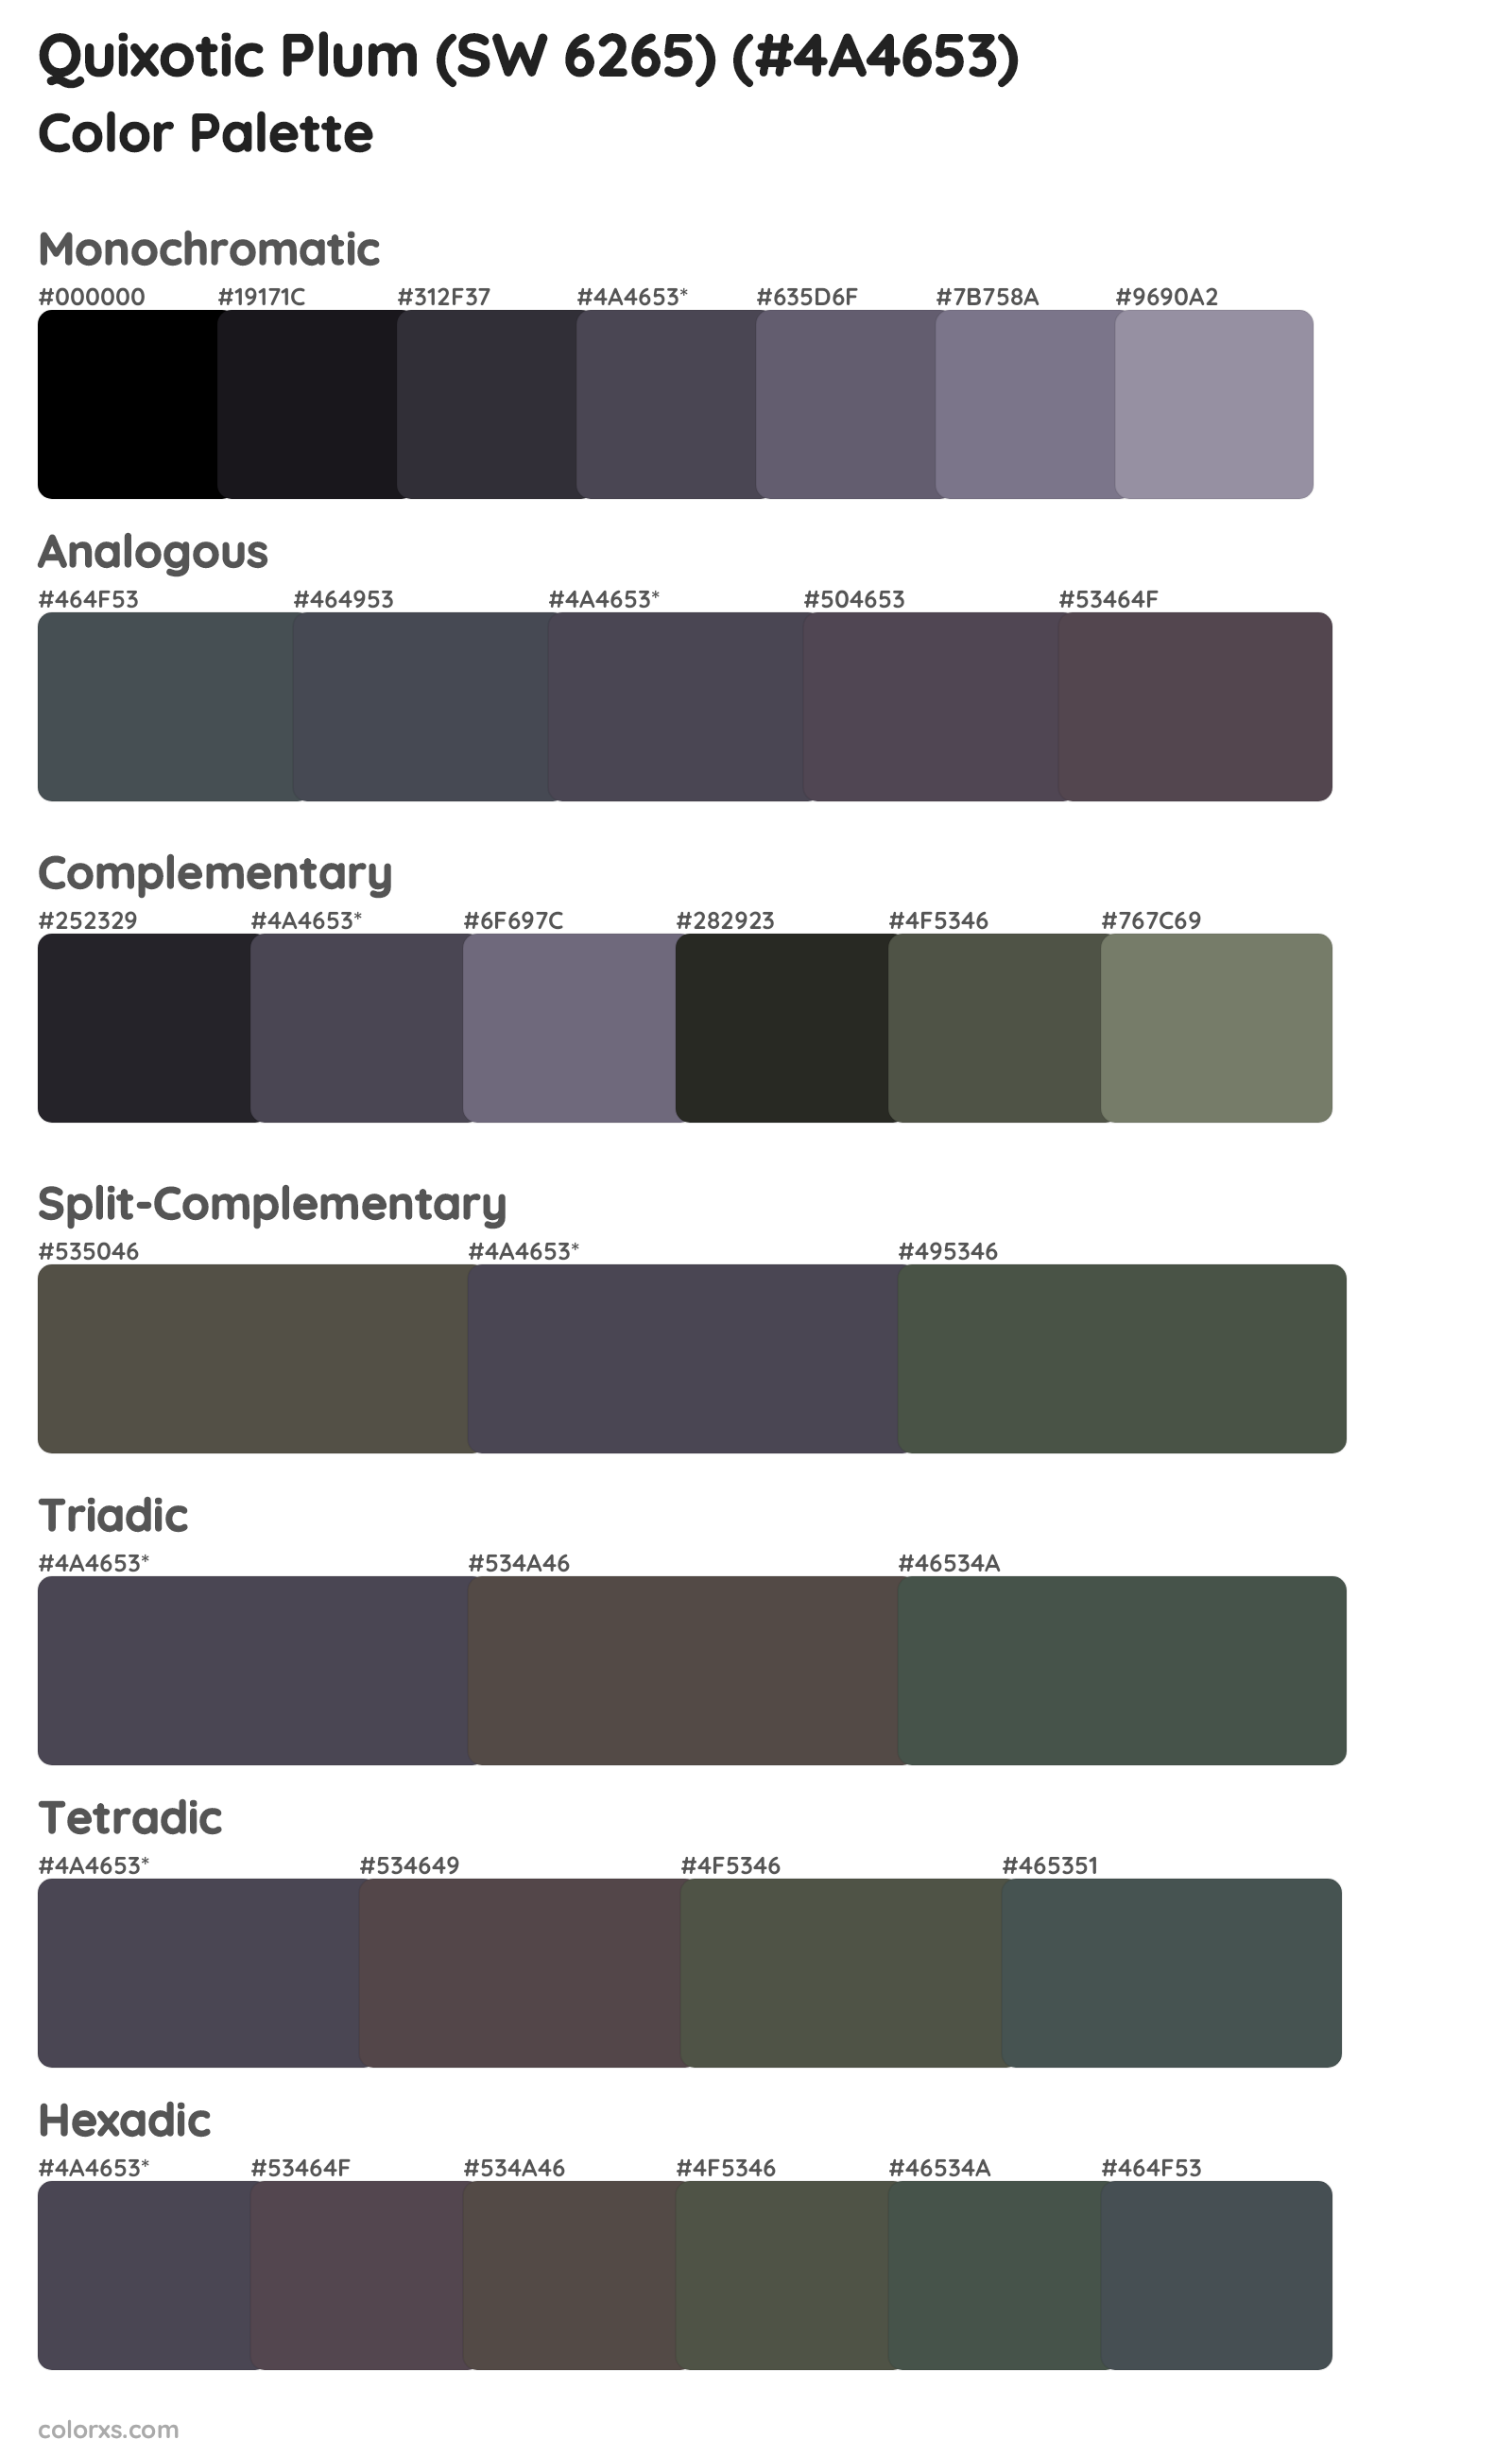 Quixotic Plum (SW 6265) Color Scheme Palettes